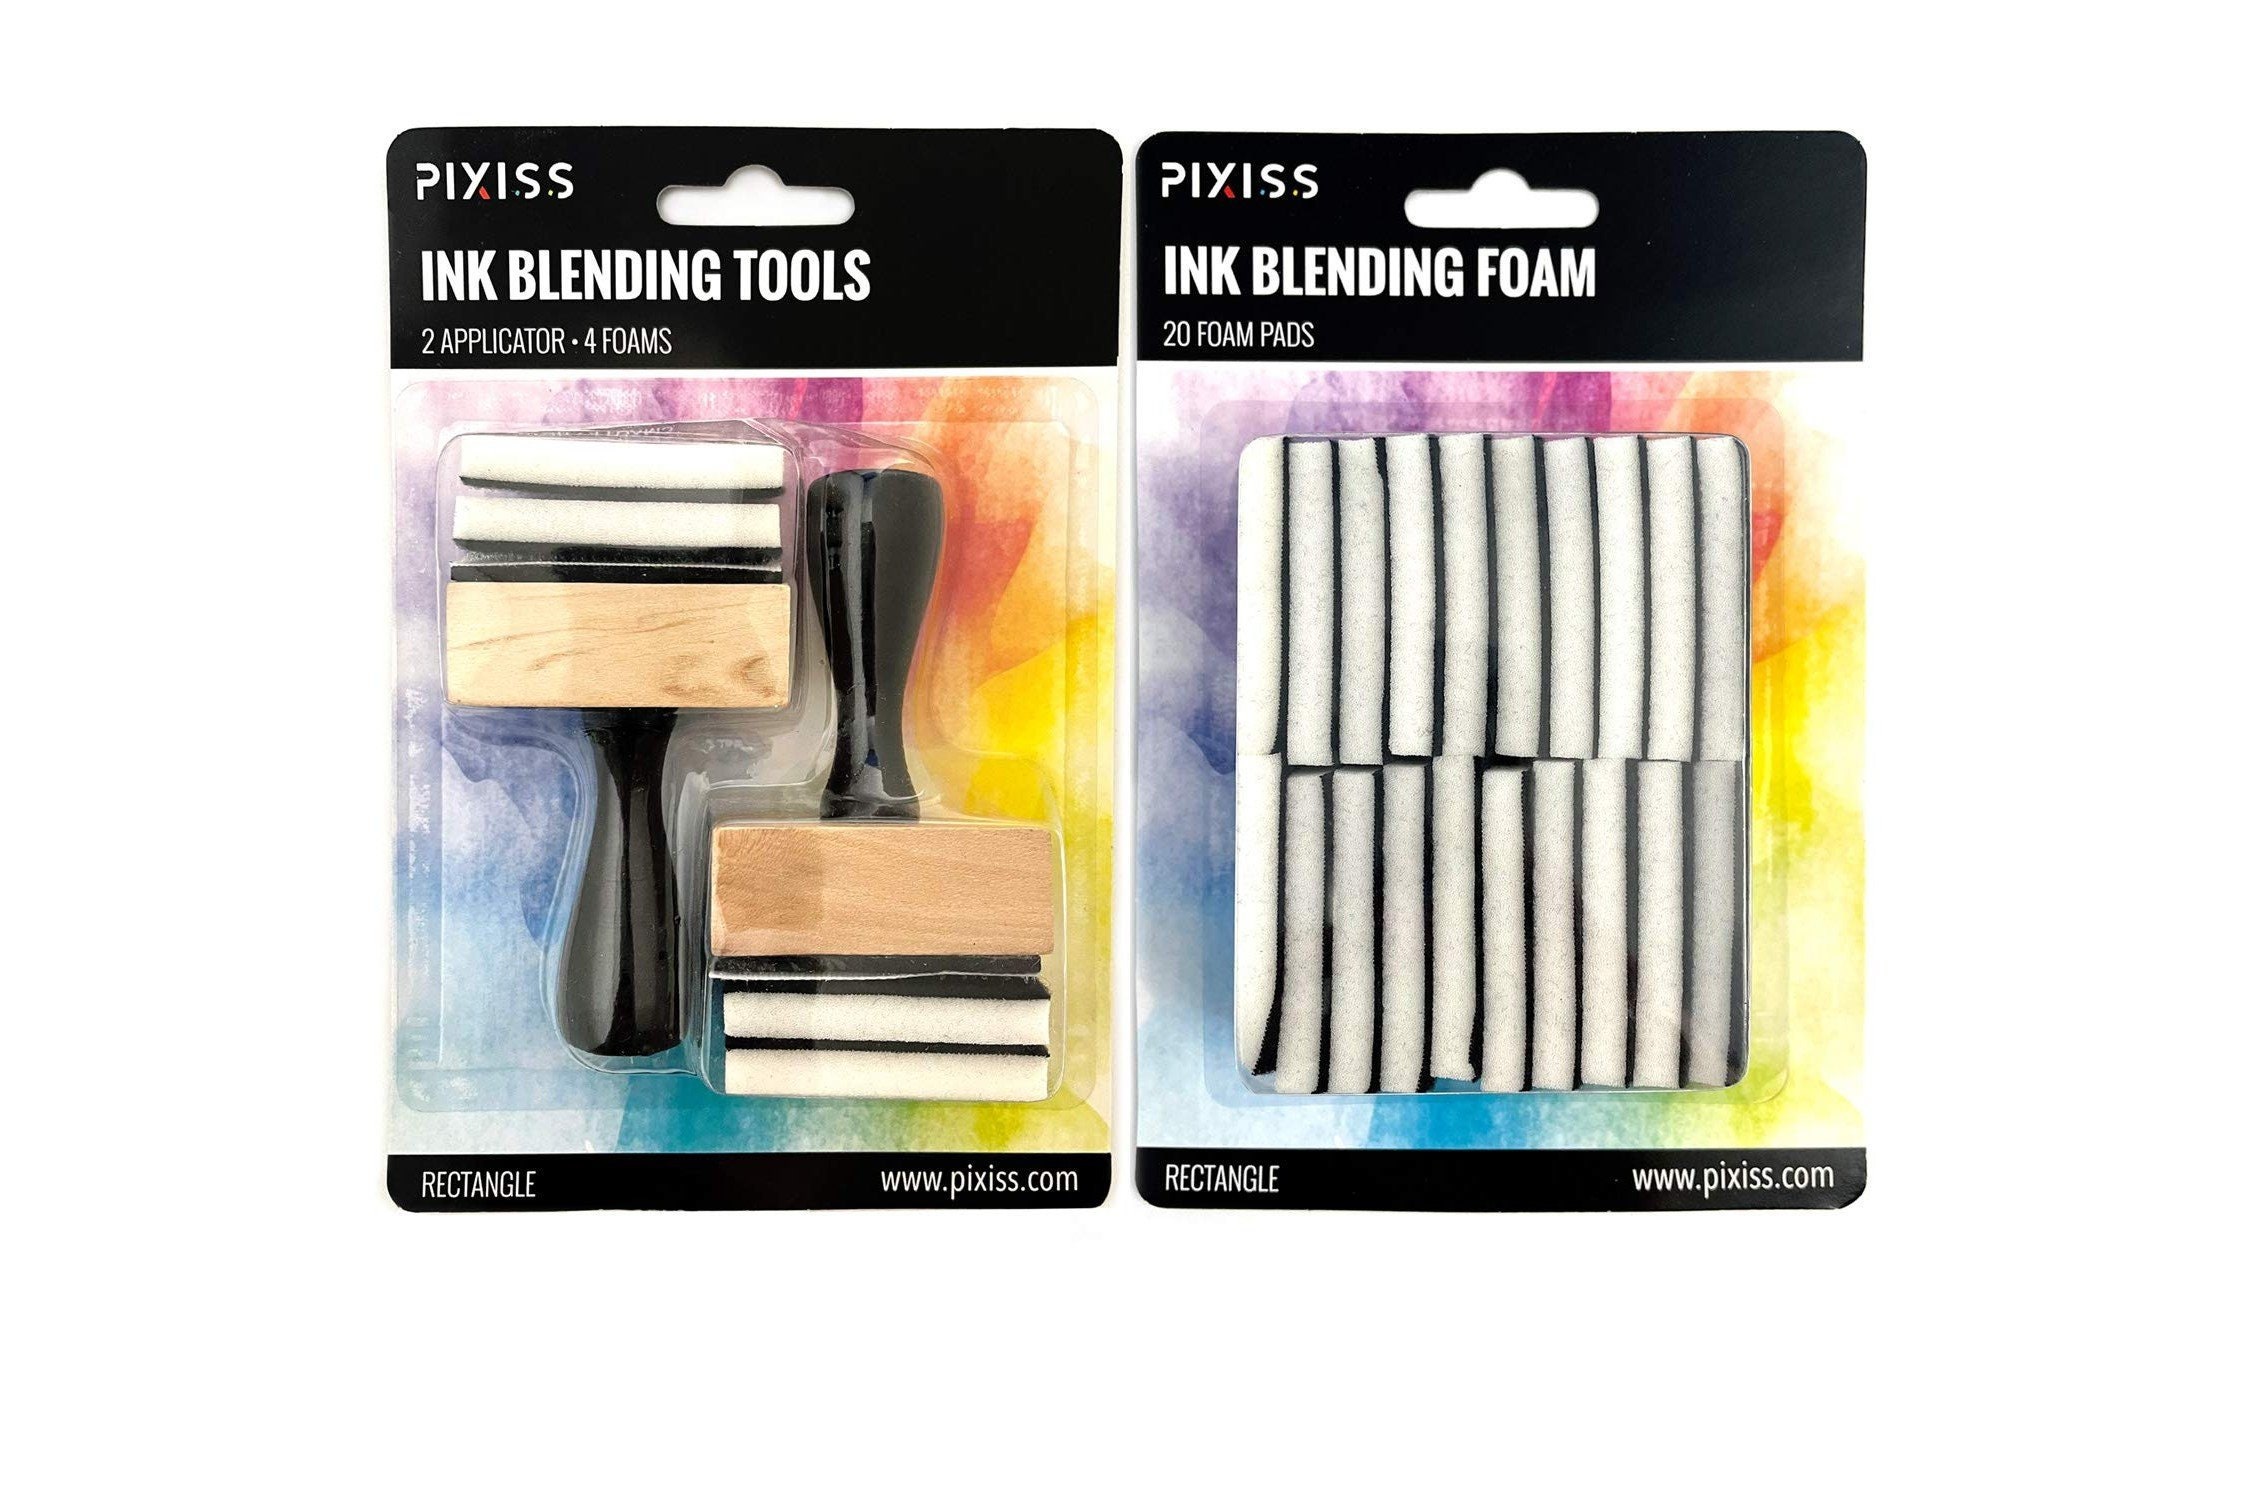 Ink Blending Brushes - 4 Piece Set